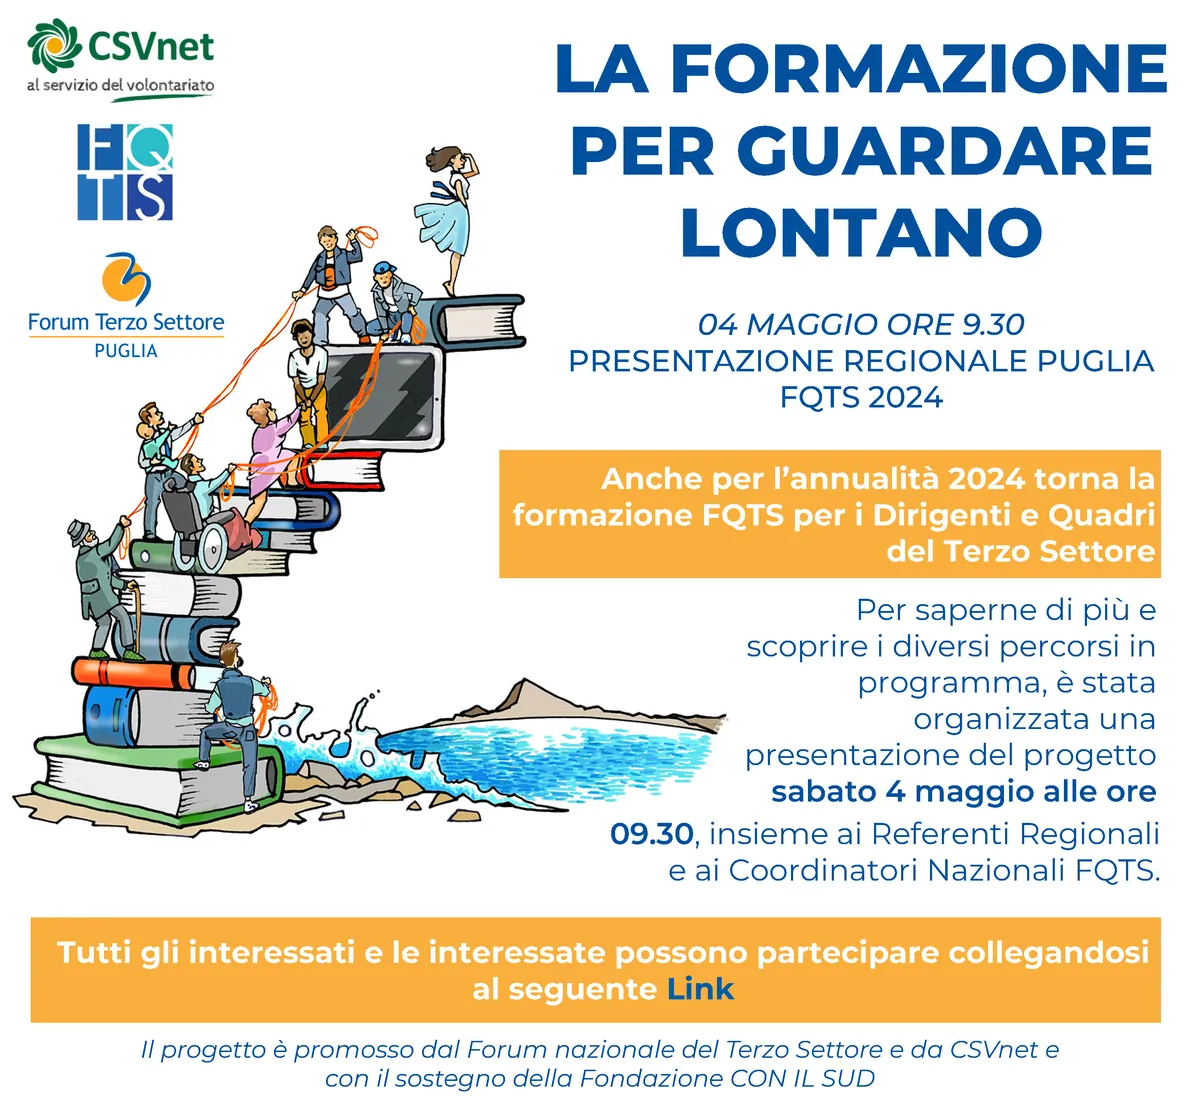 Presentazione Puglia Formazione FQTS 2024